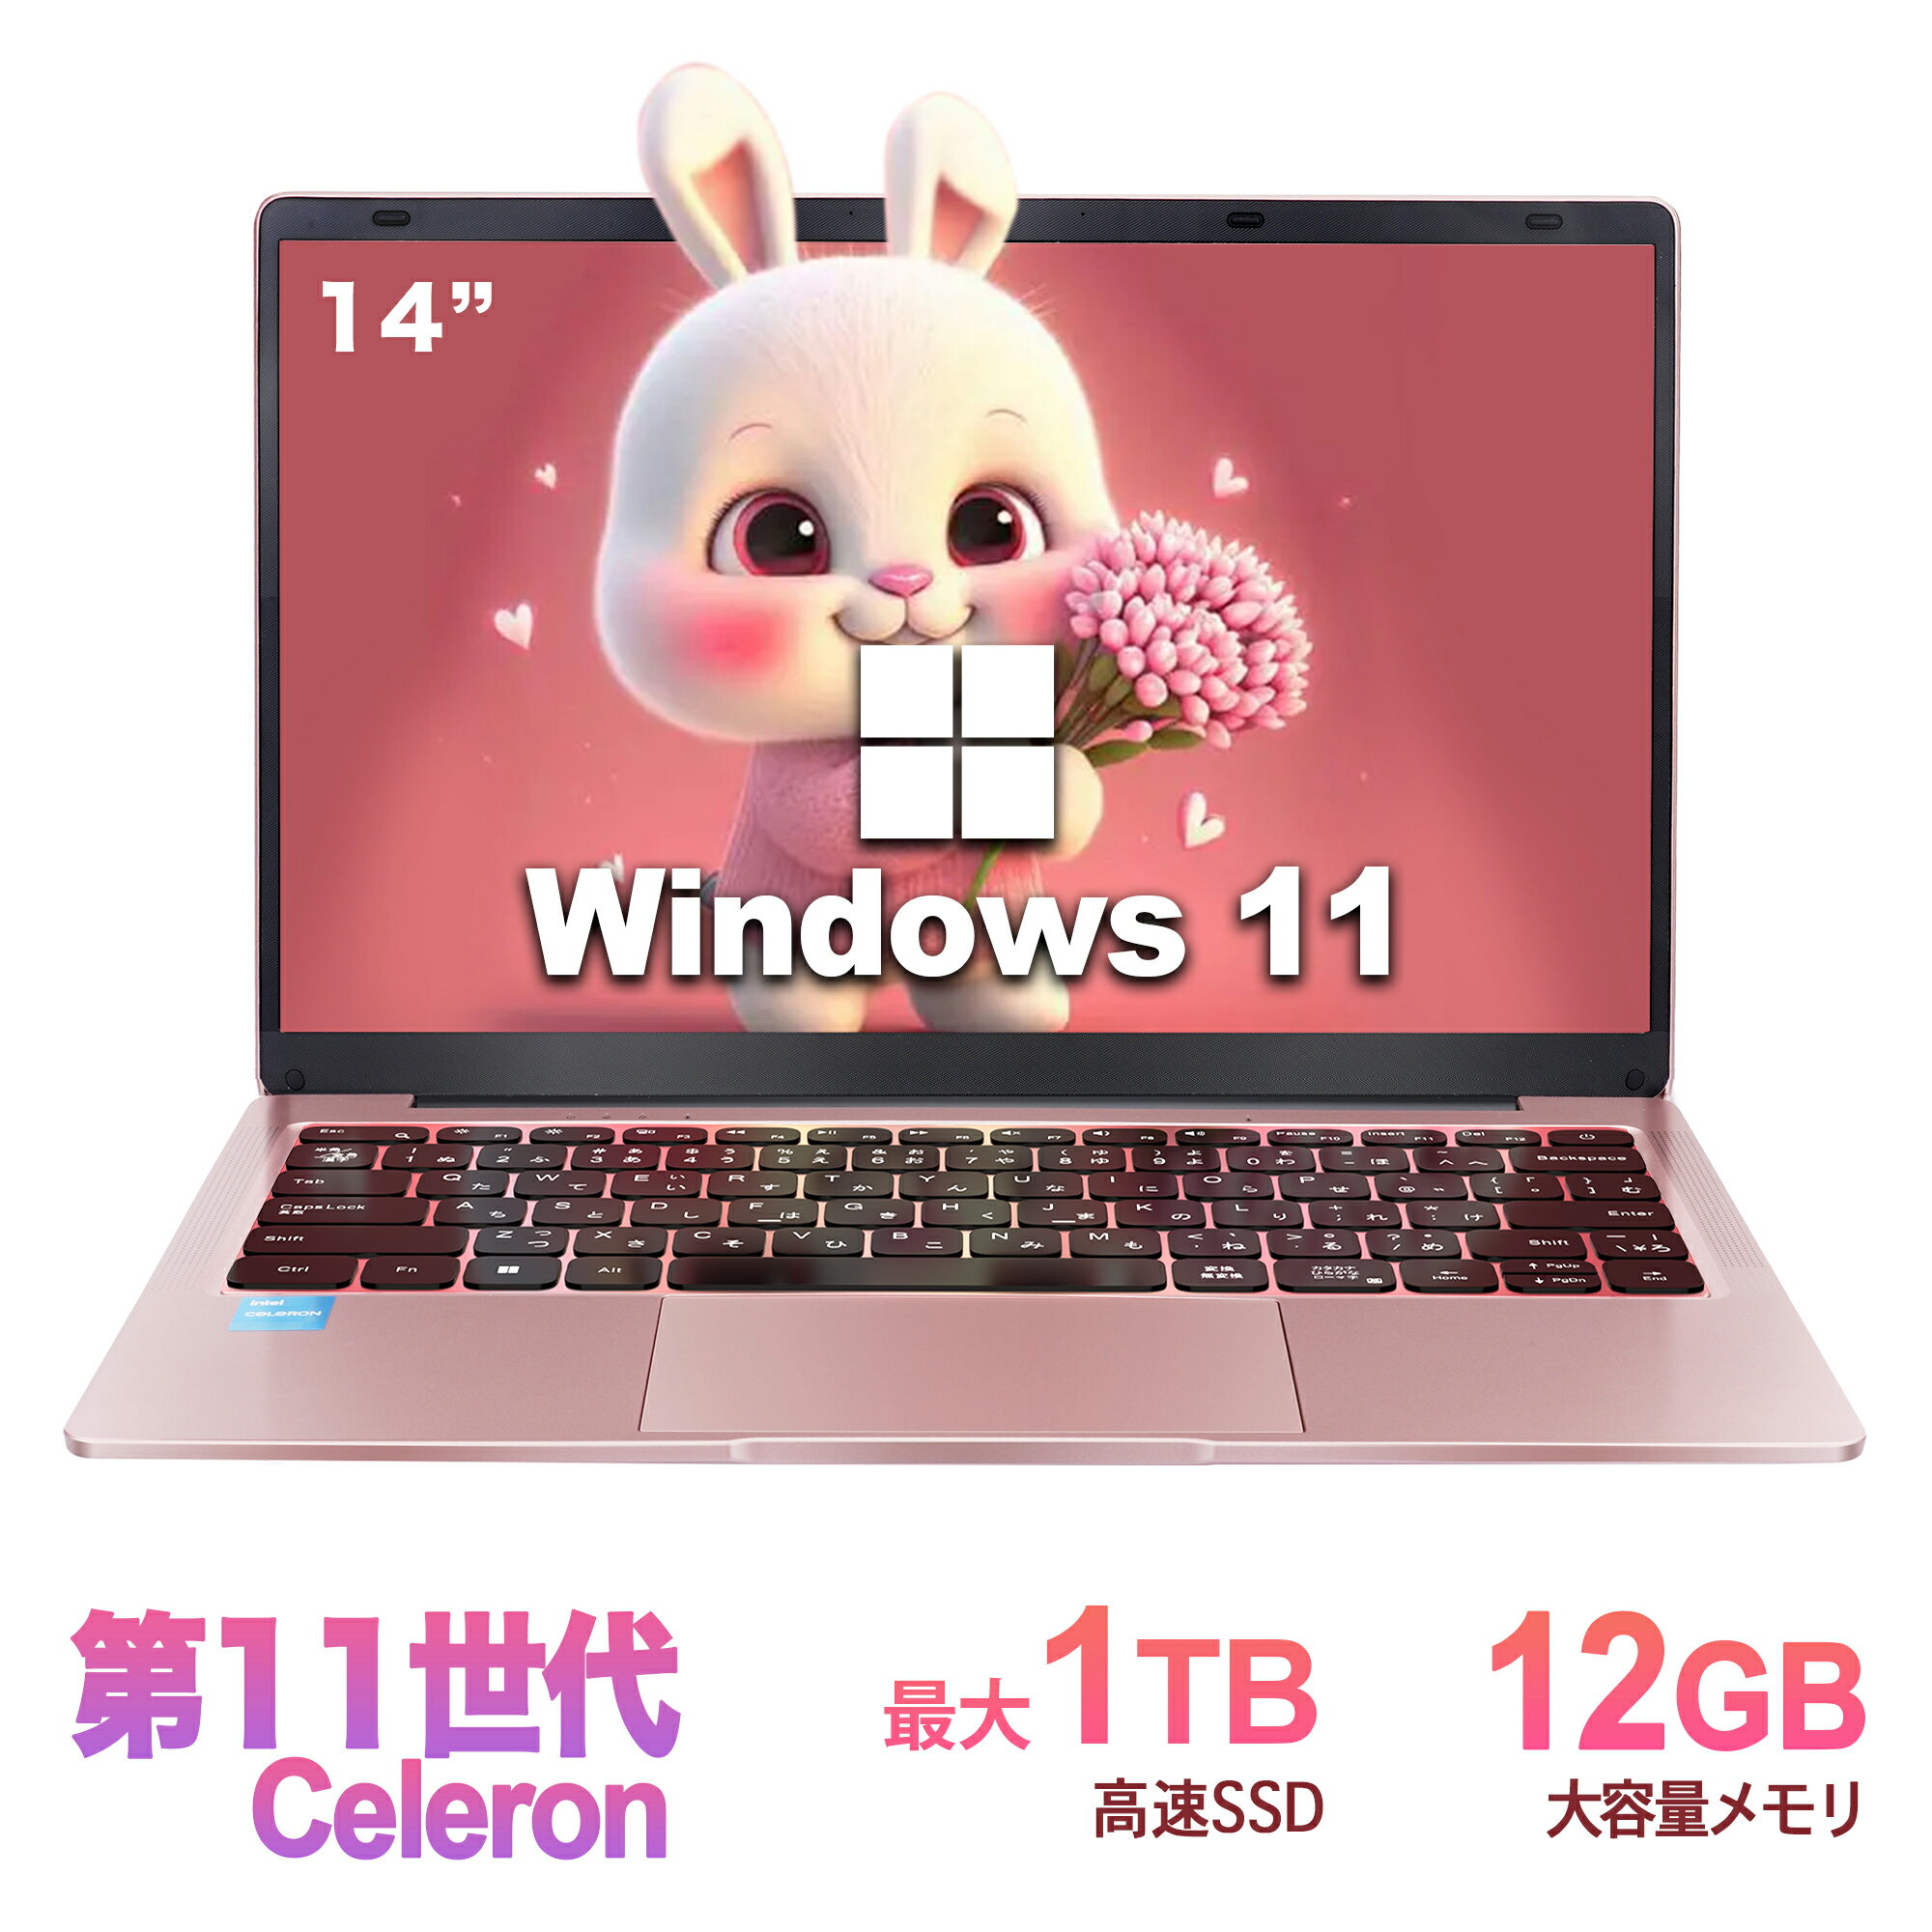 ノートパソコン 新品 Office付き 初心者向け 初期設定済 Win11 Pro 日本語キーボード テレワーク応援 Celeron N3350メモリー:12GB/高速SSD:256GB/14型液晶/Webカメラ/USB 3.0/miniHDMI/無線機…